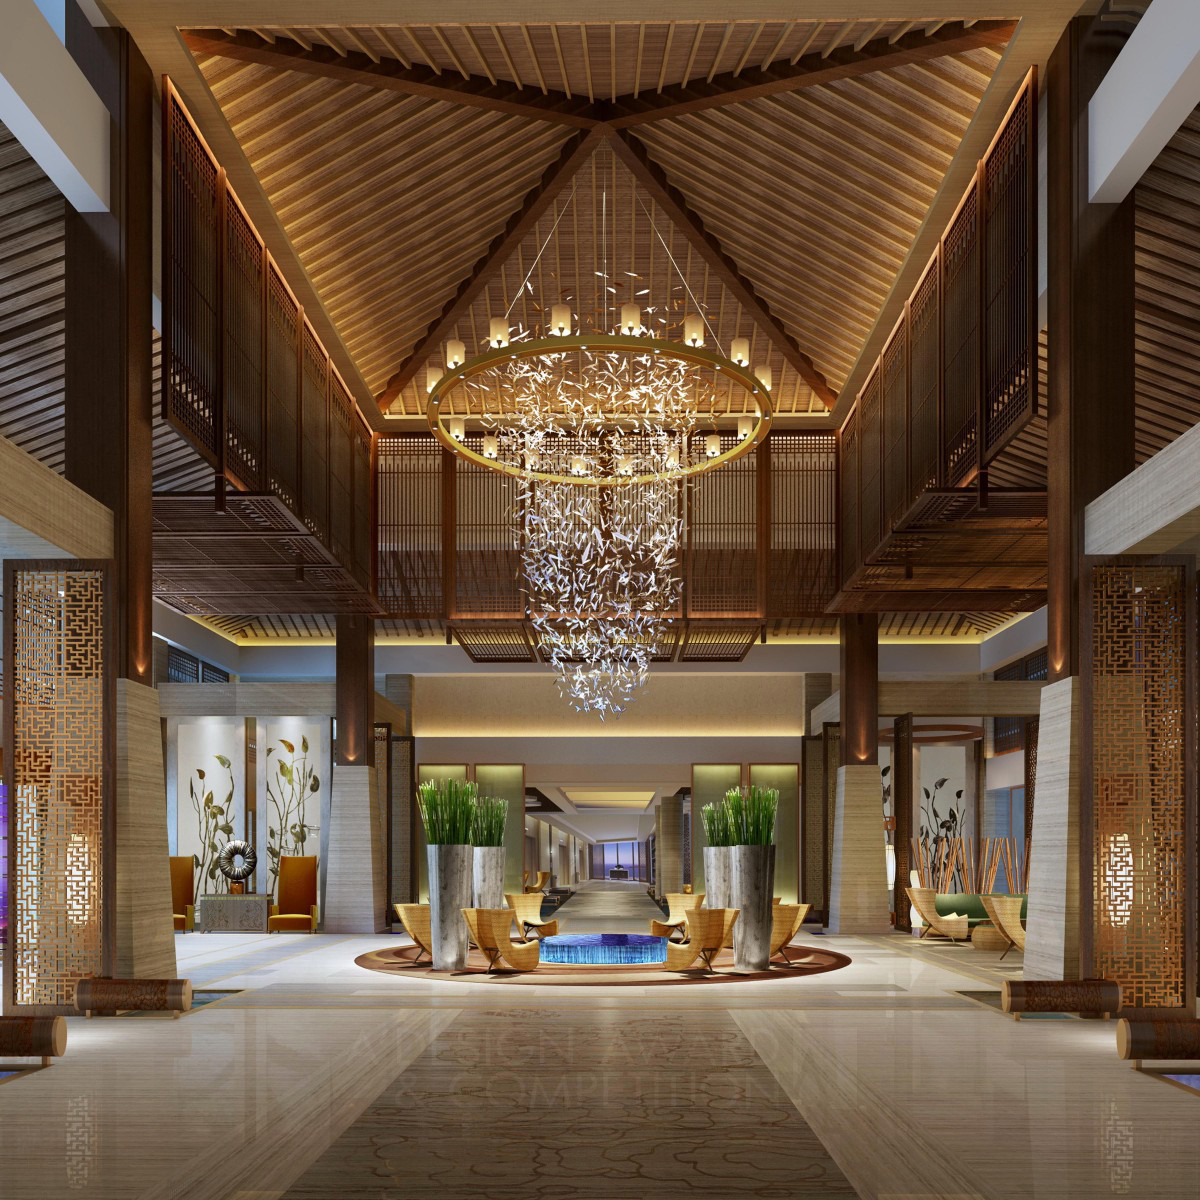 Dali International Hotel  the first Bai platinum five star hotel by SunLegang,Zhang guoke,JiangQin,Nielei,